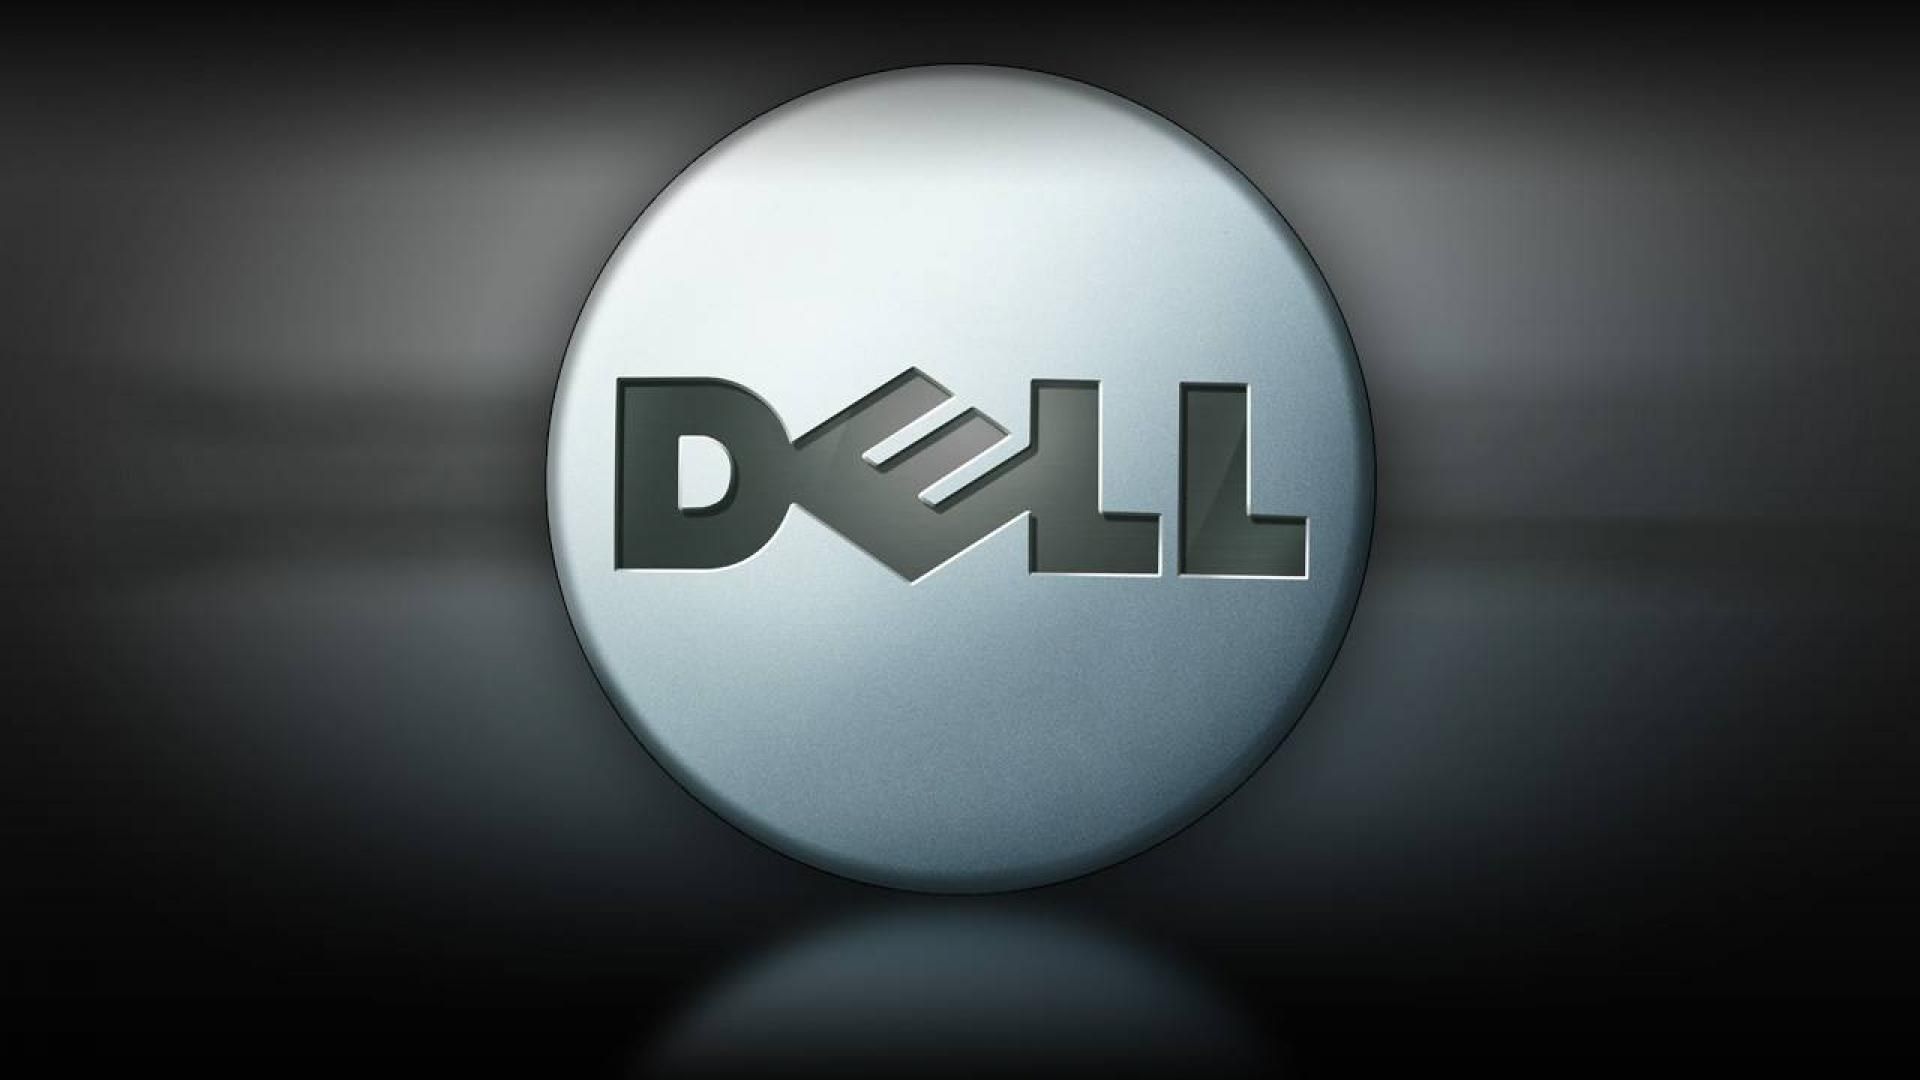  Dell Hintergrundbild 1920x1080. Dell Wallpaper 4K